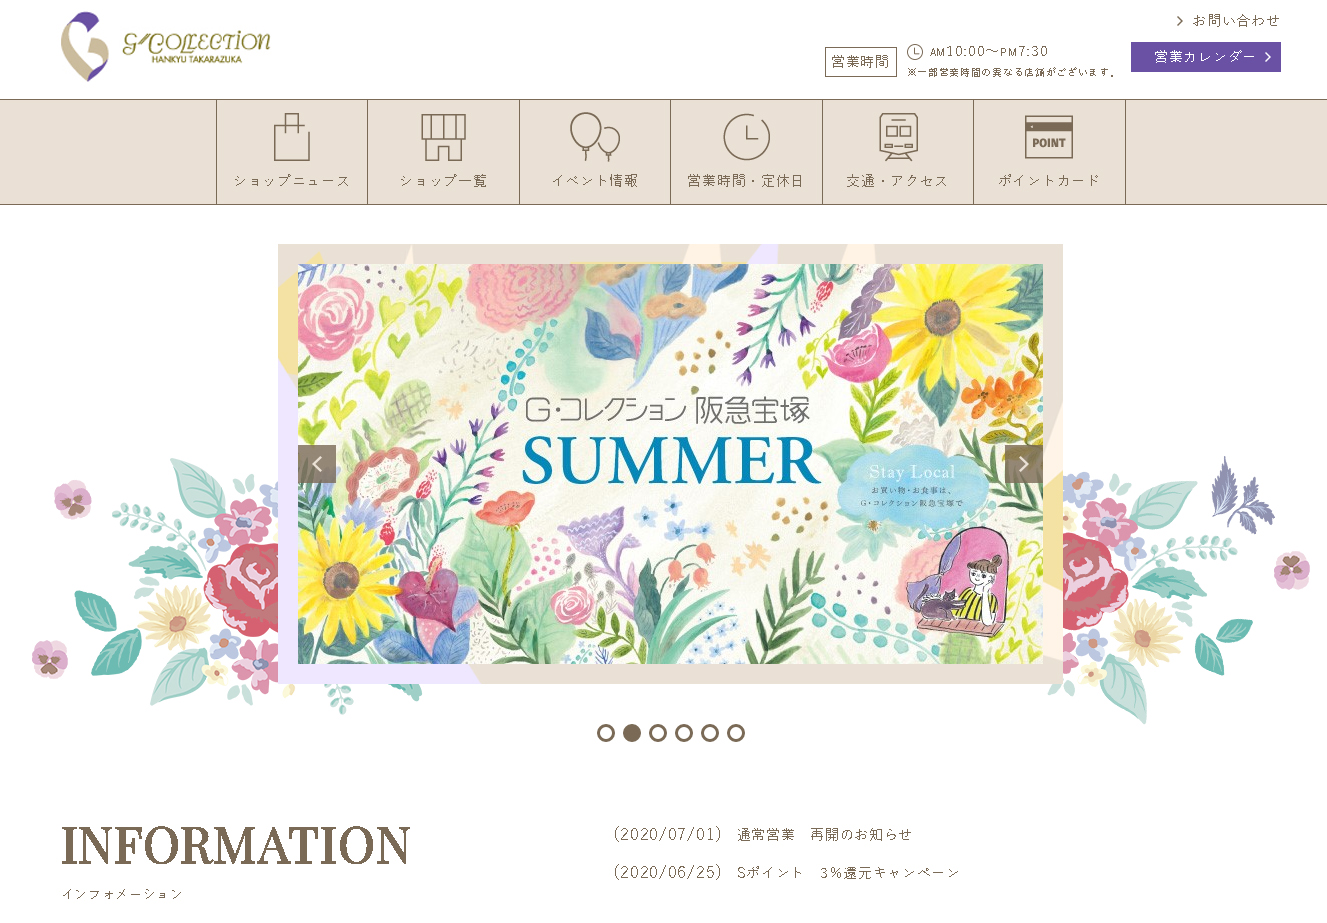 G コレクション阪急宝塚summer のビジュアルイラスト Shinco Uematsu Website